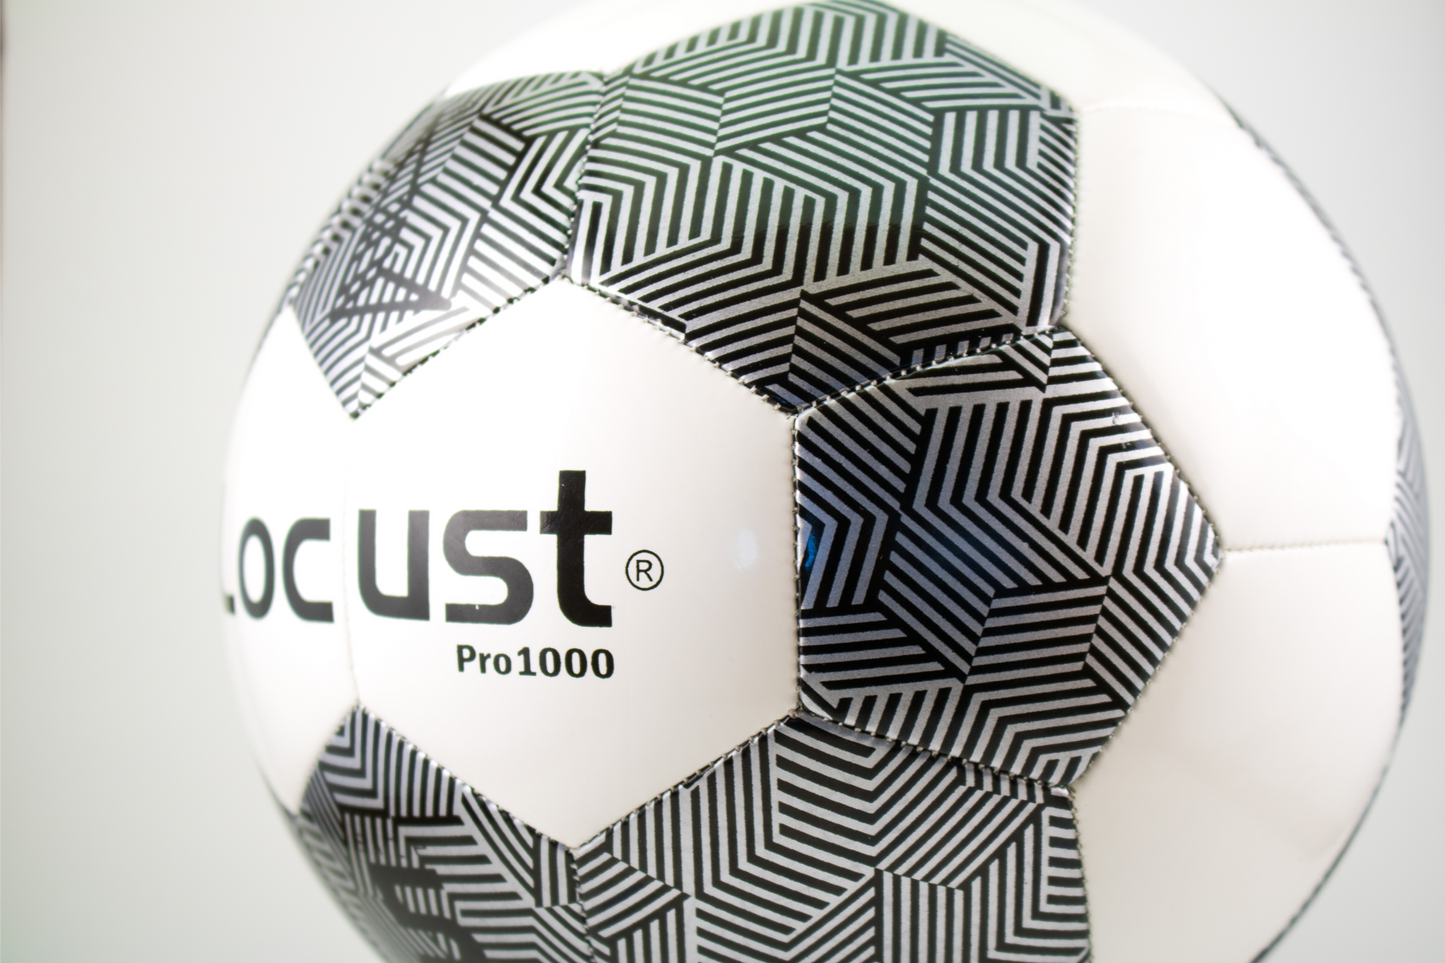 Locust Pro1000